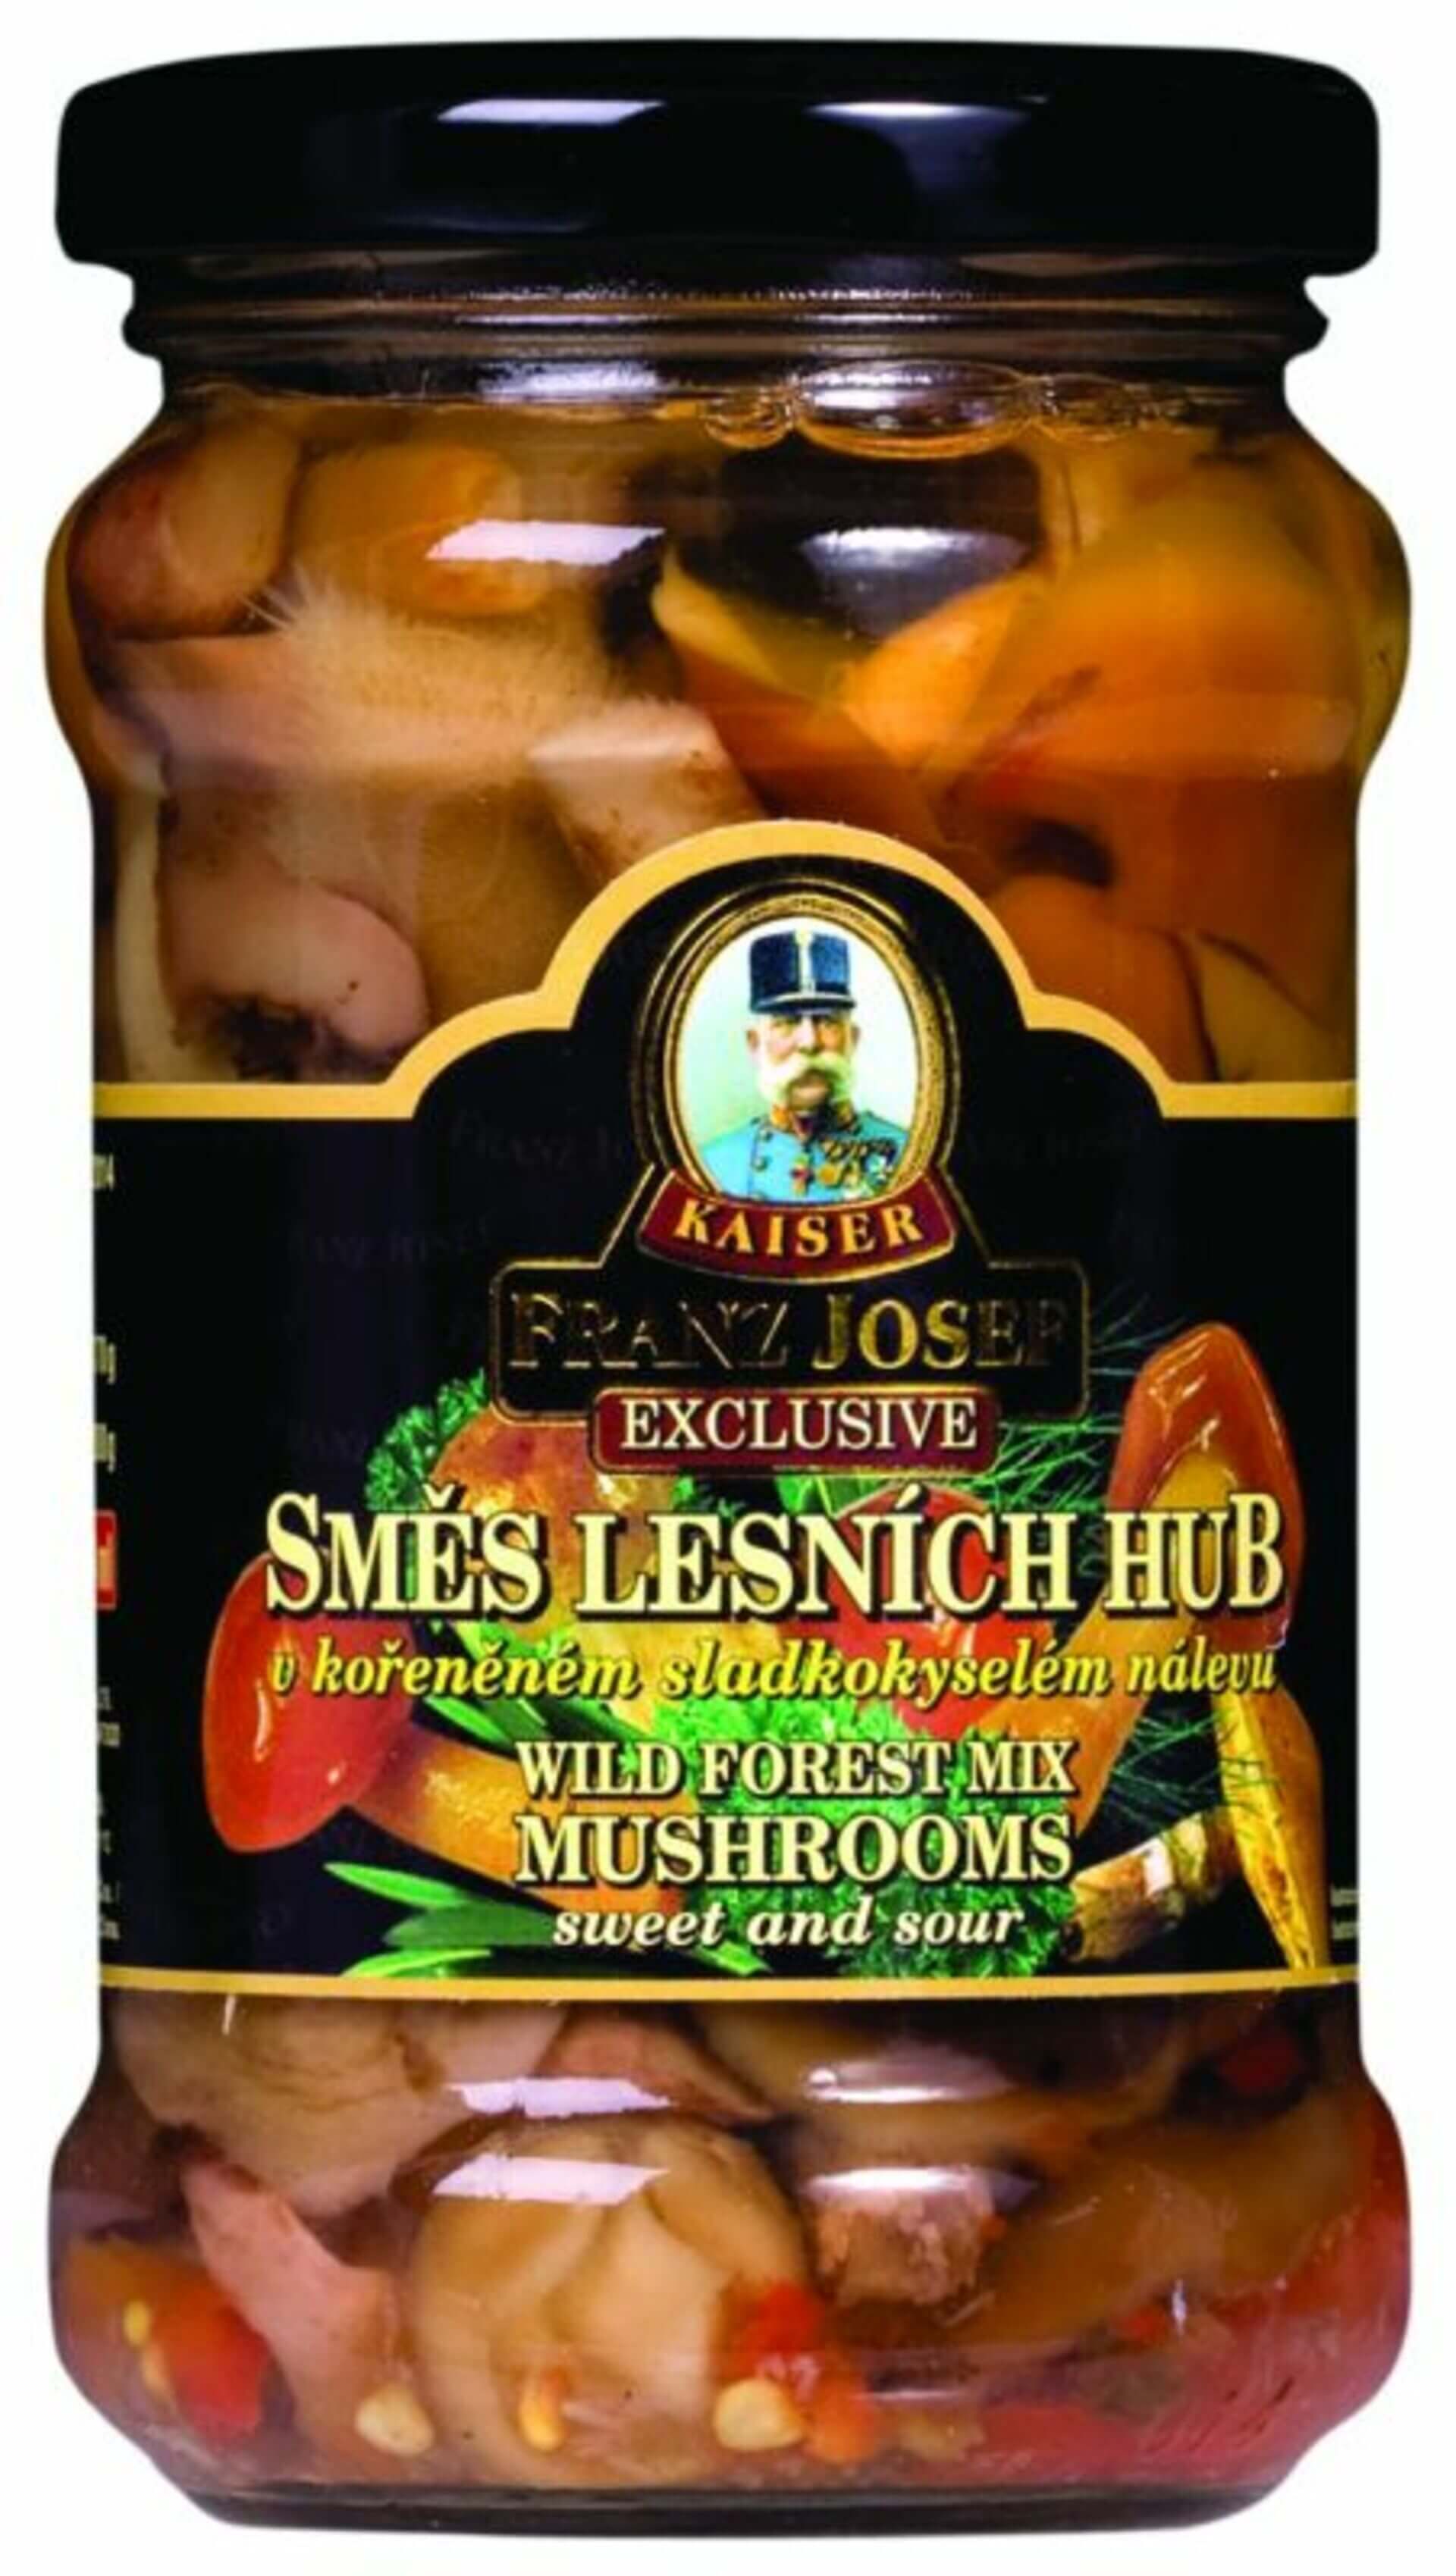 E-shop Franz Josef Kaiser Zmes lesných húb v sladkokyslom náleve 314 ml (280 g)